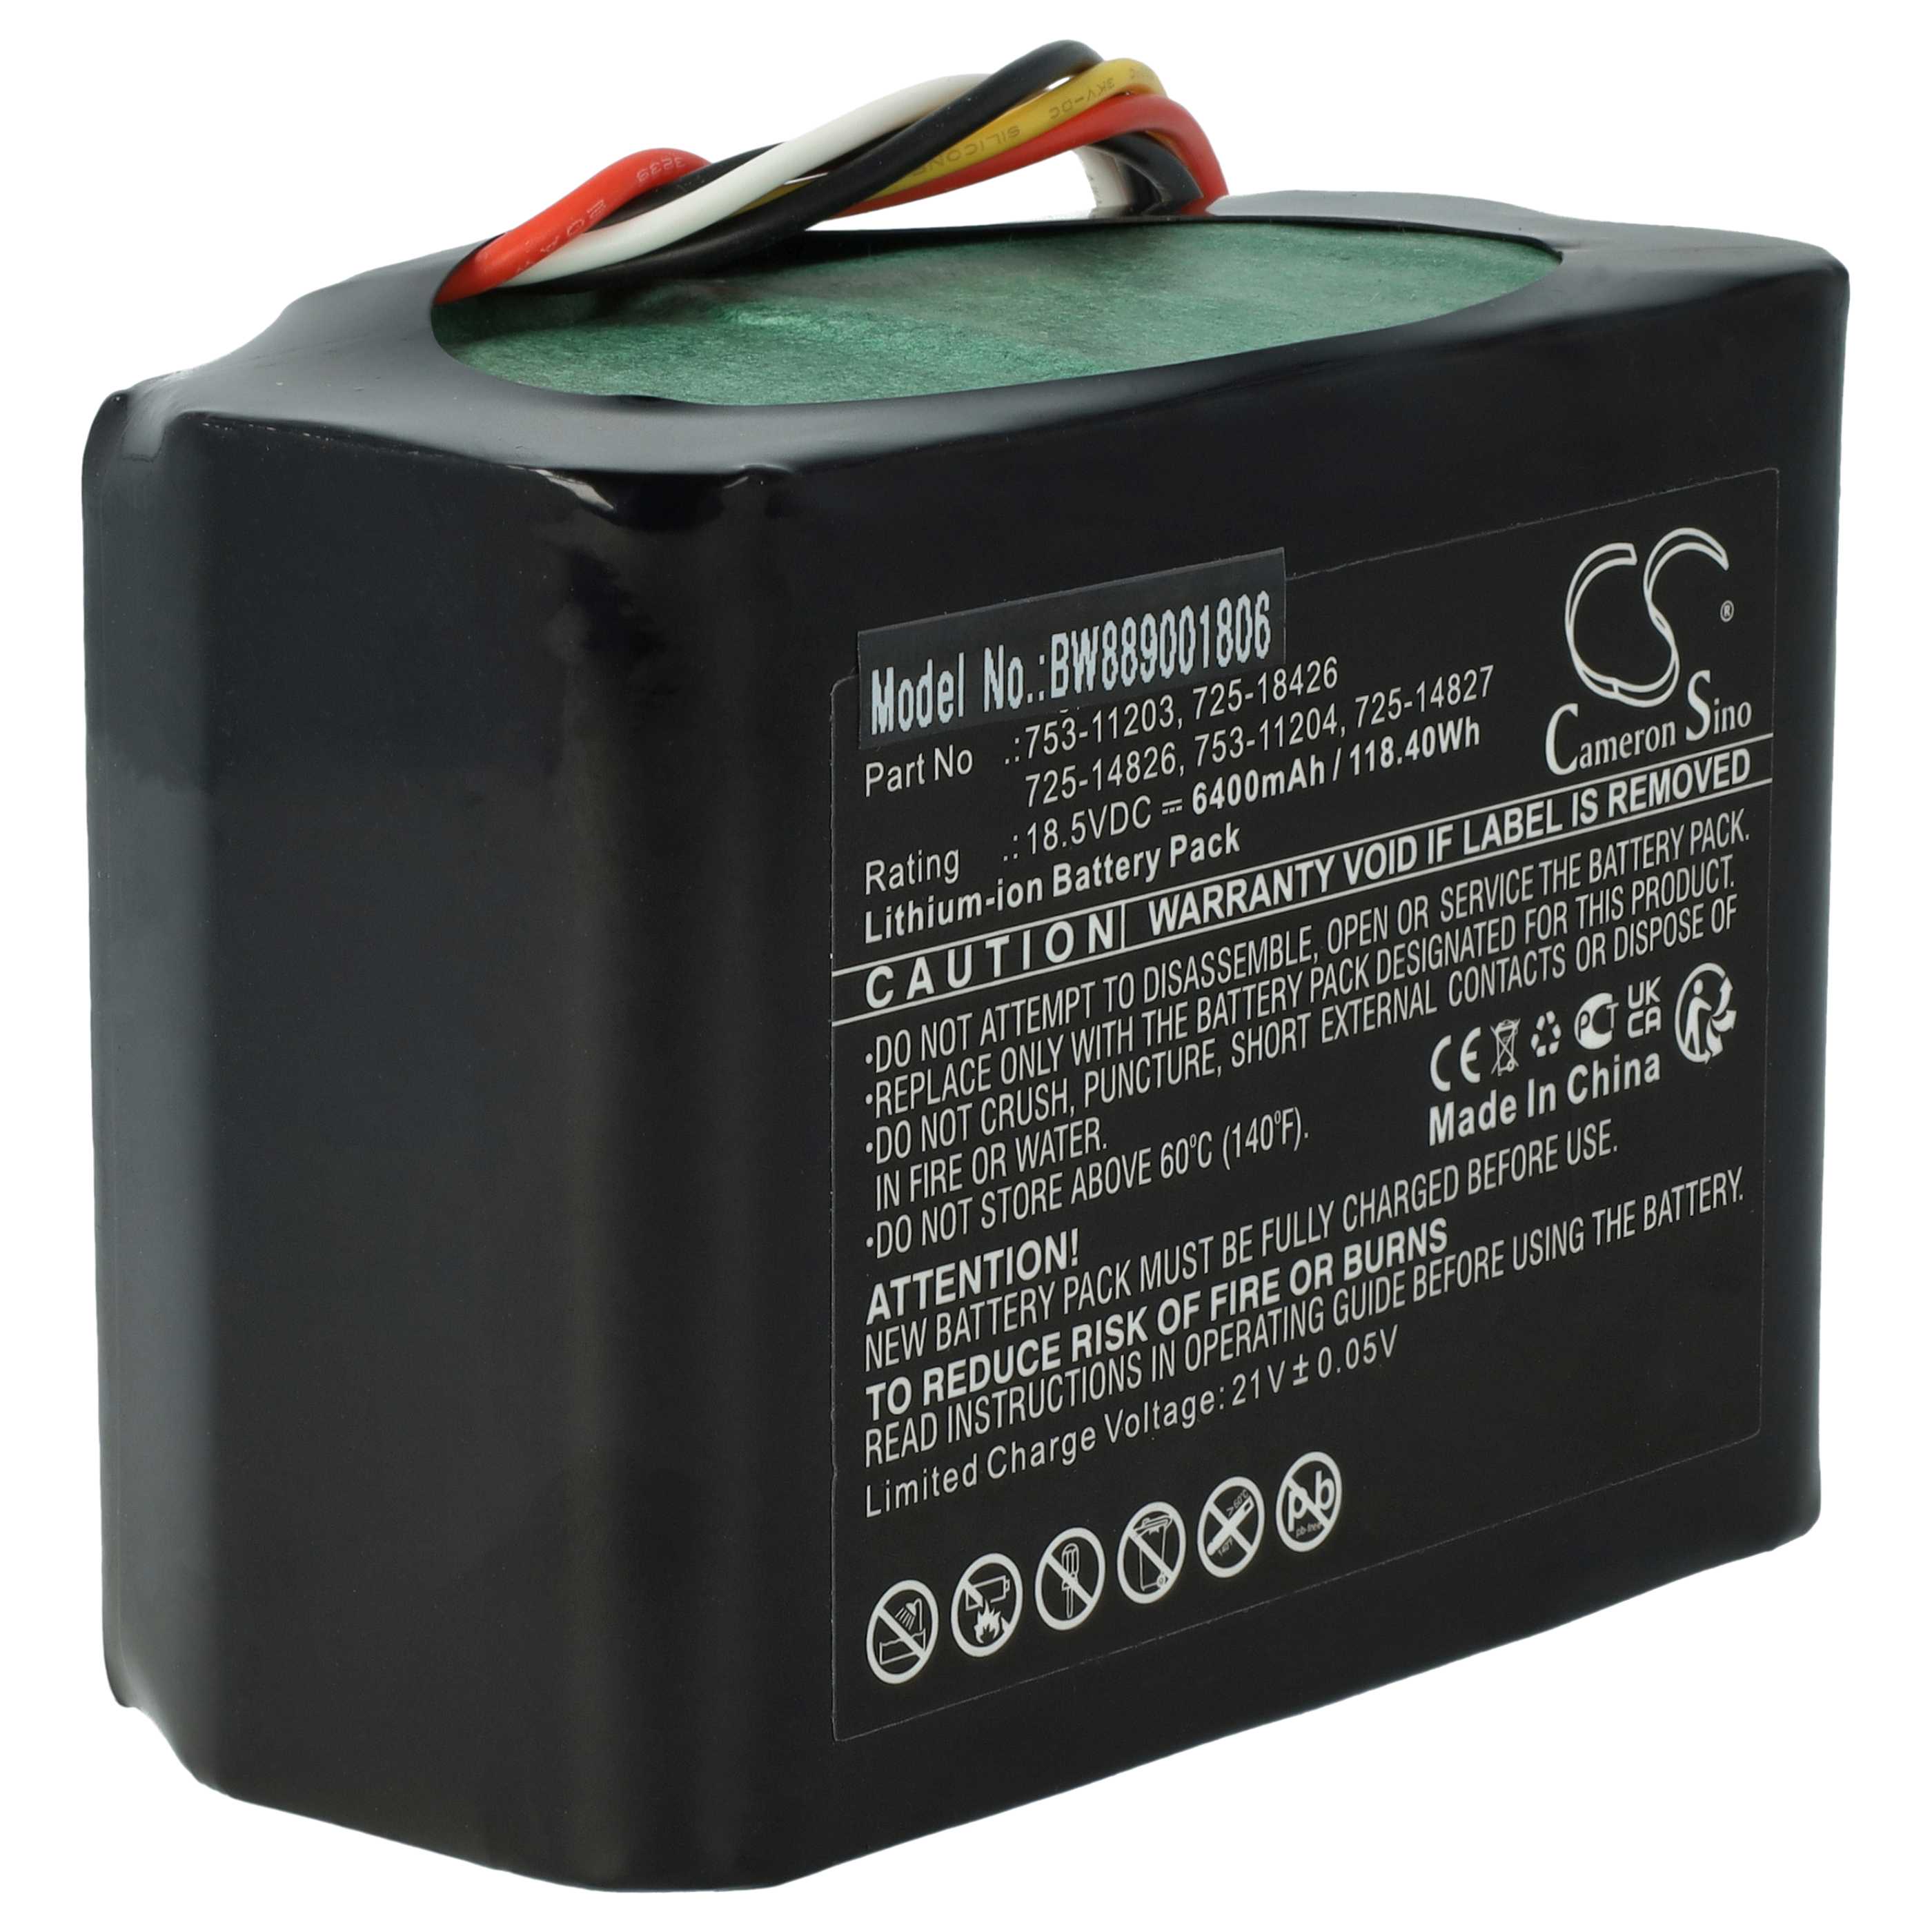 Batería reemplaza CubCadet 725-14826, 725-14827 para herramientas de jardín Robomow - 6400 mAh 18,5 V Li-Ion